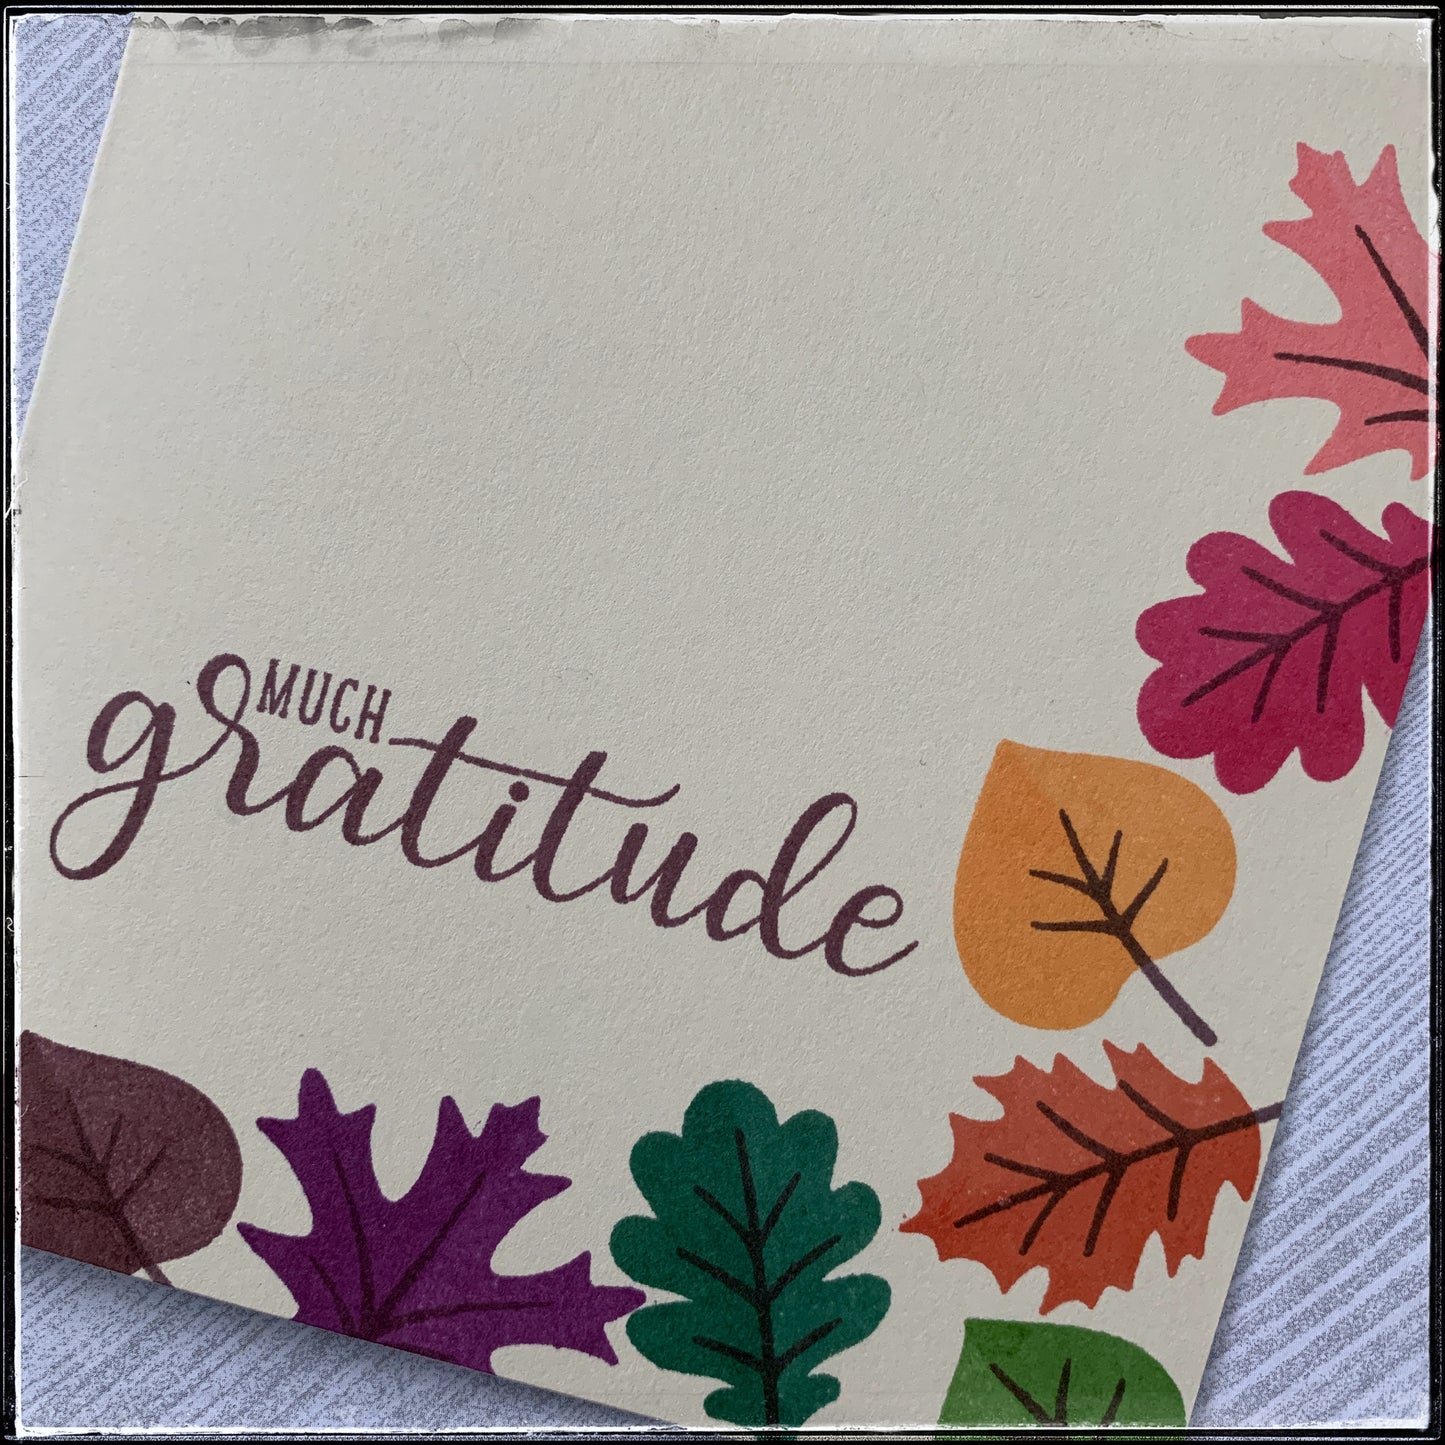 Much Gratitude